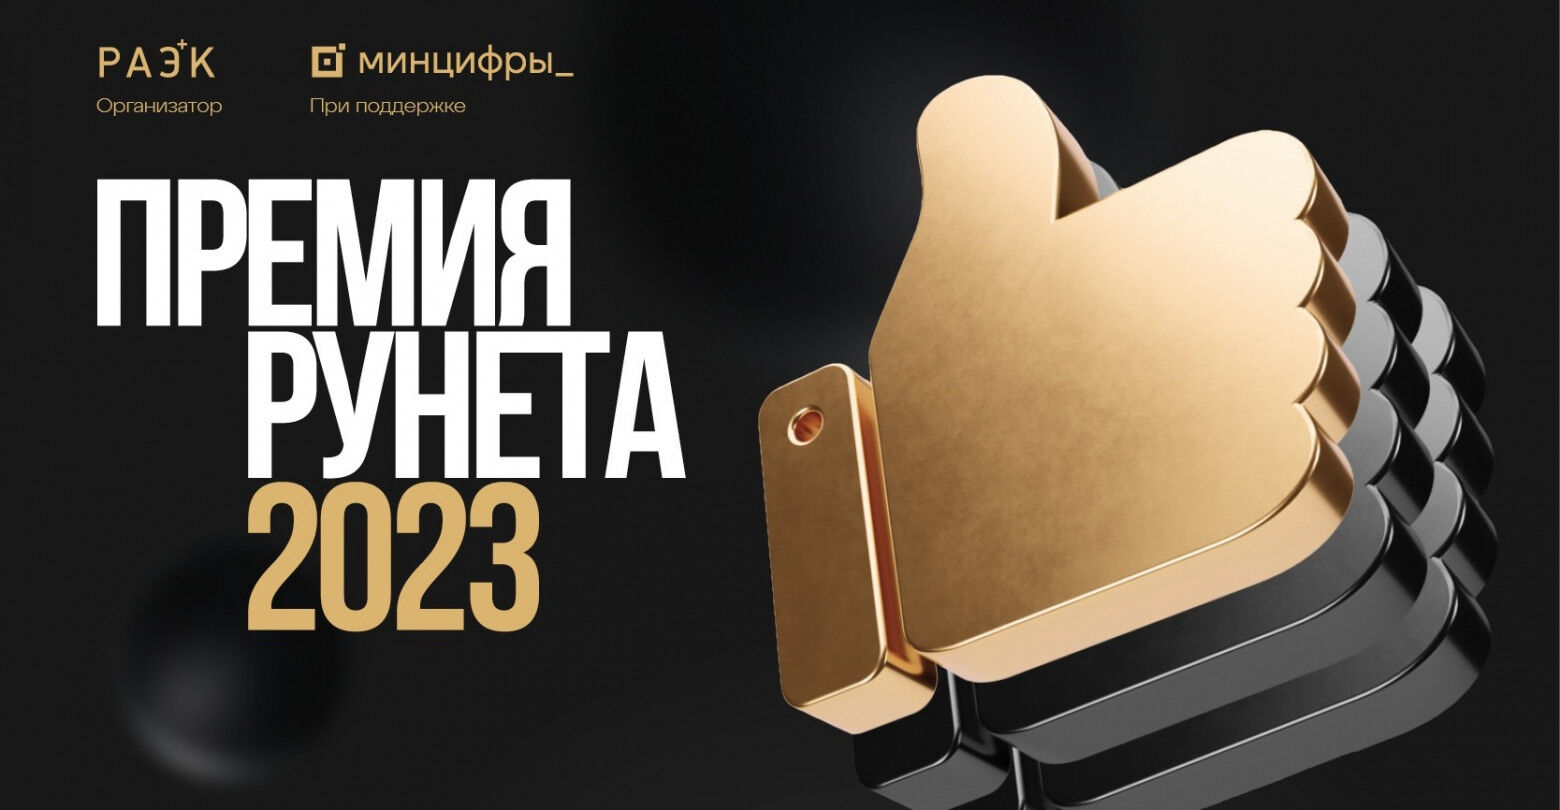 Подробнее о "Объявлены лауреаты Премии Рунета 2023"